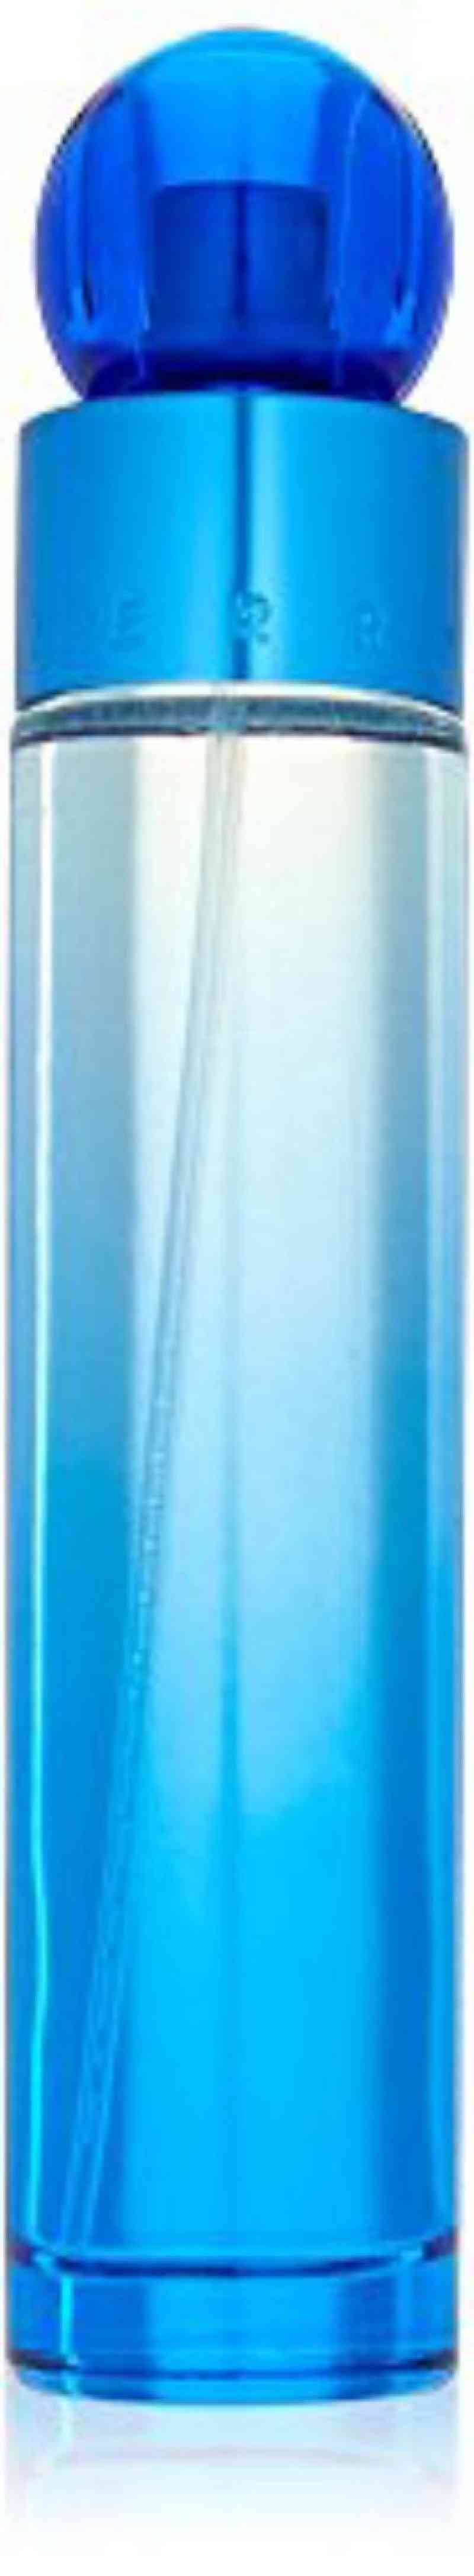 Perry Ellis 360 Very Blue For Men Eau De Toilette Spray 3.4 Ounce